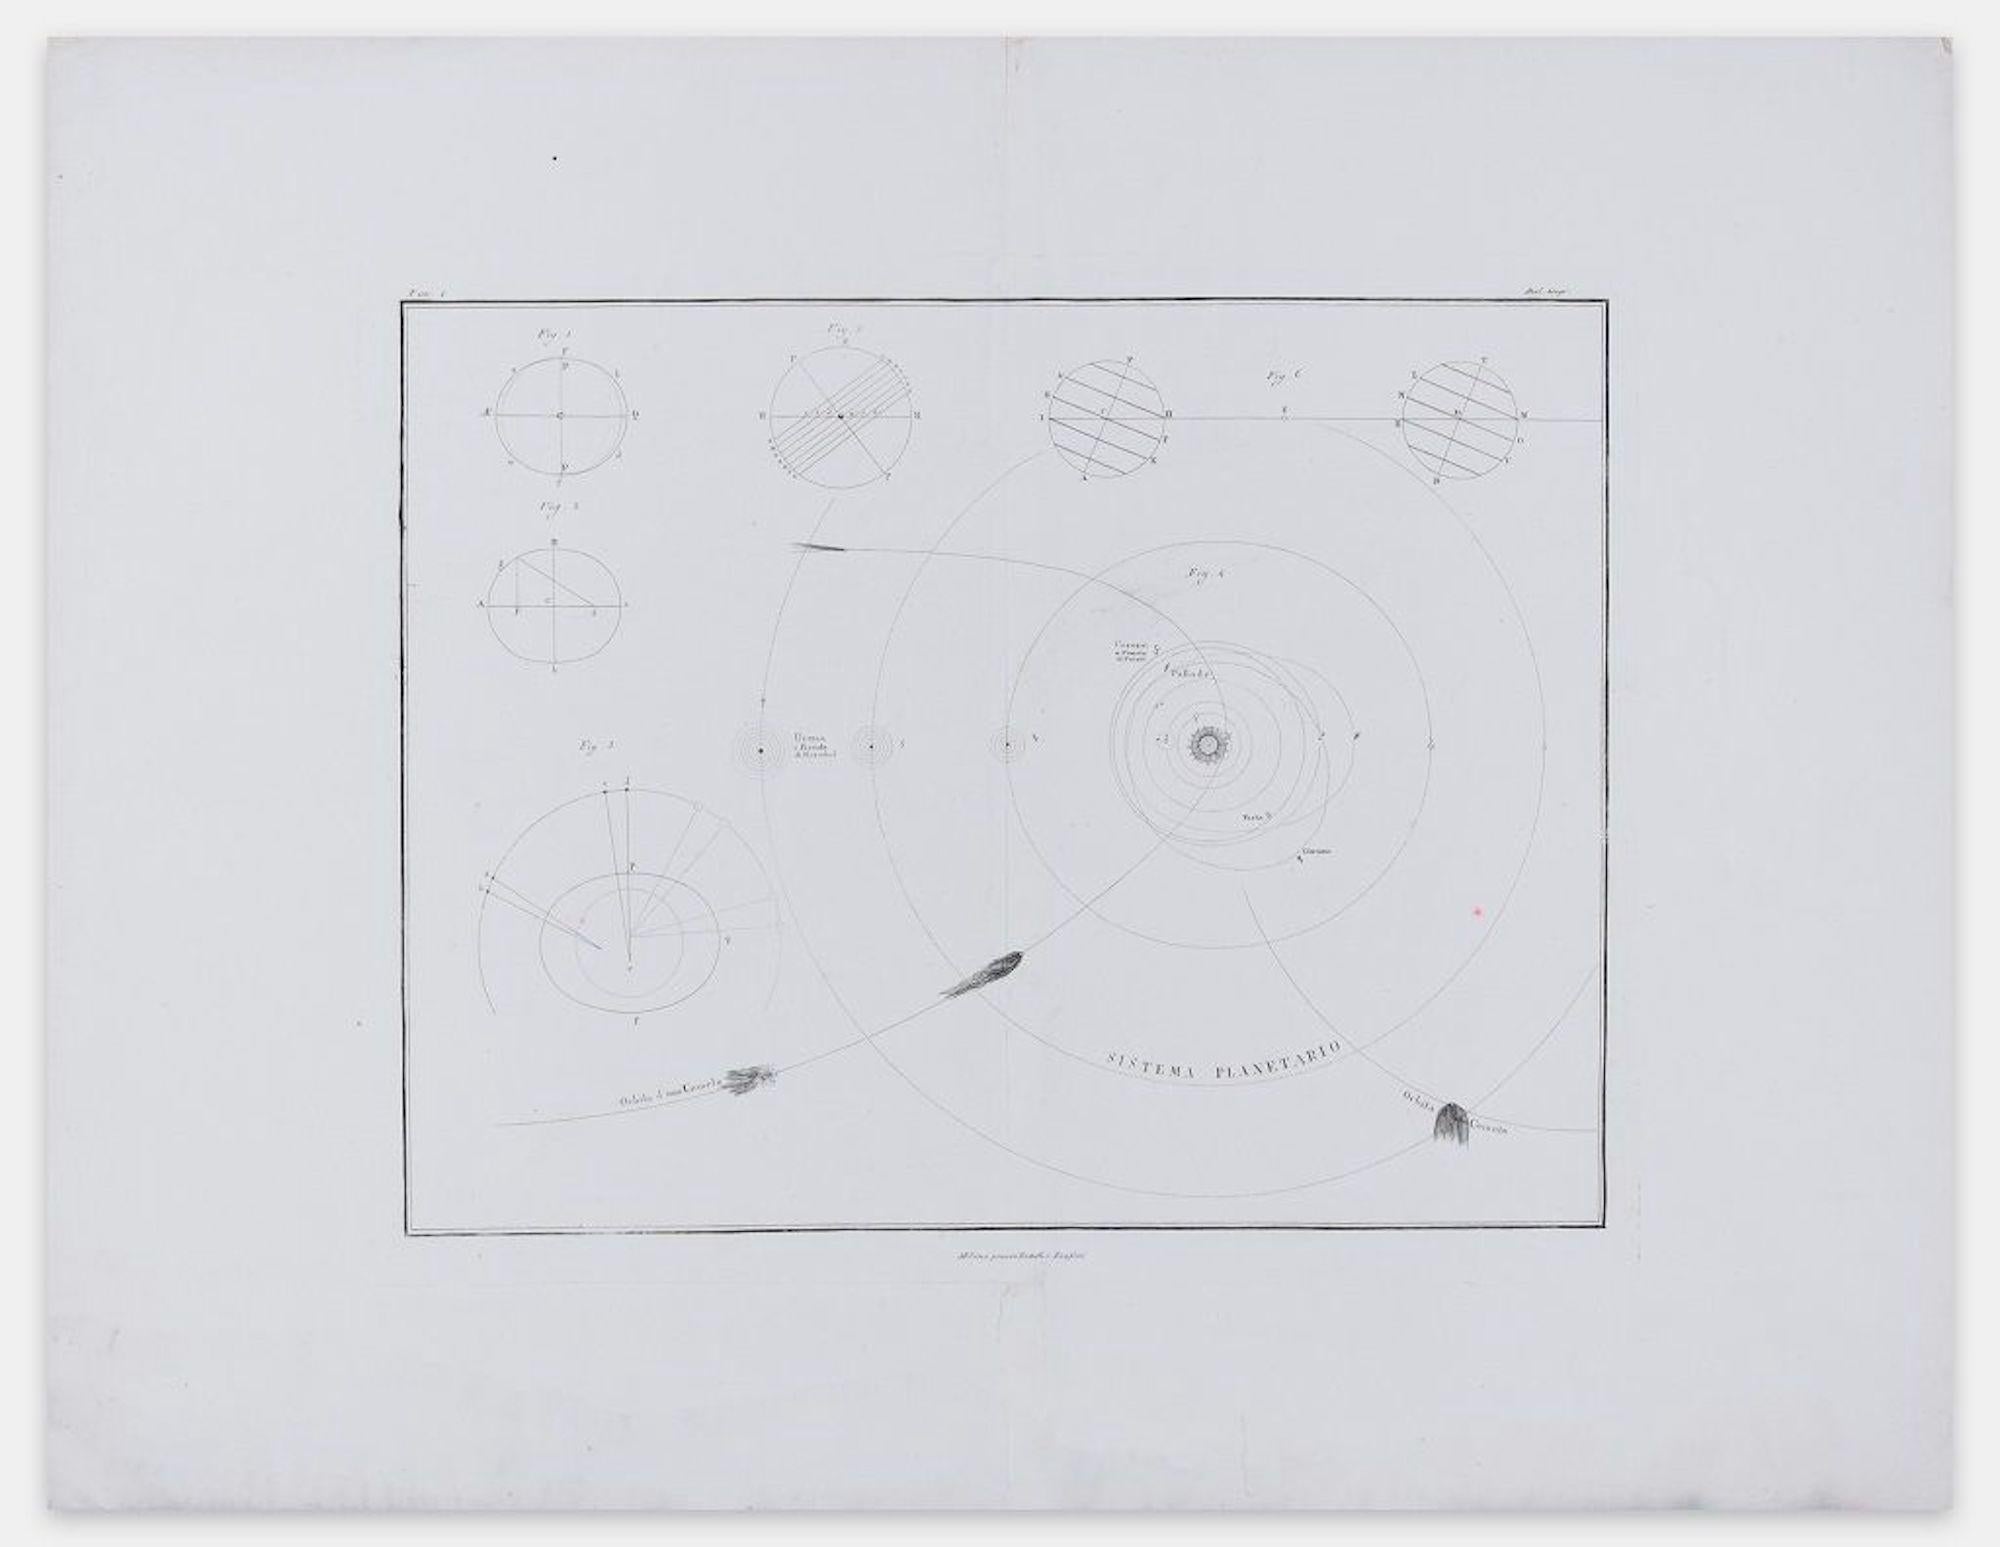 Luigi Rossi Figurative Print - Planetary System - From Nuovo Atlante di Geografia Universale - 1820